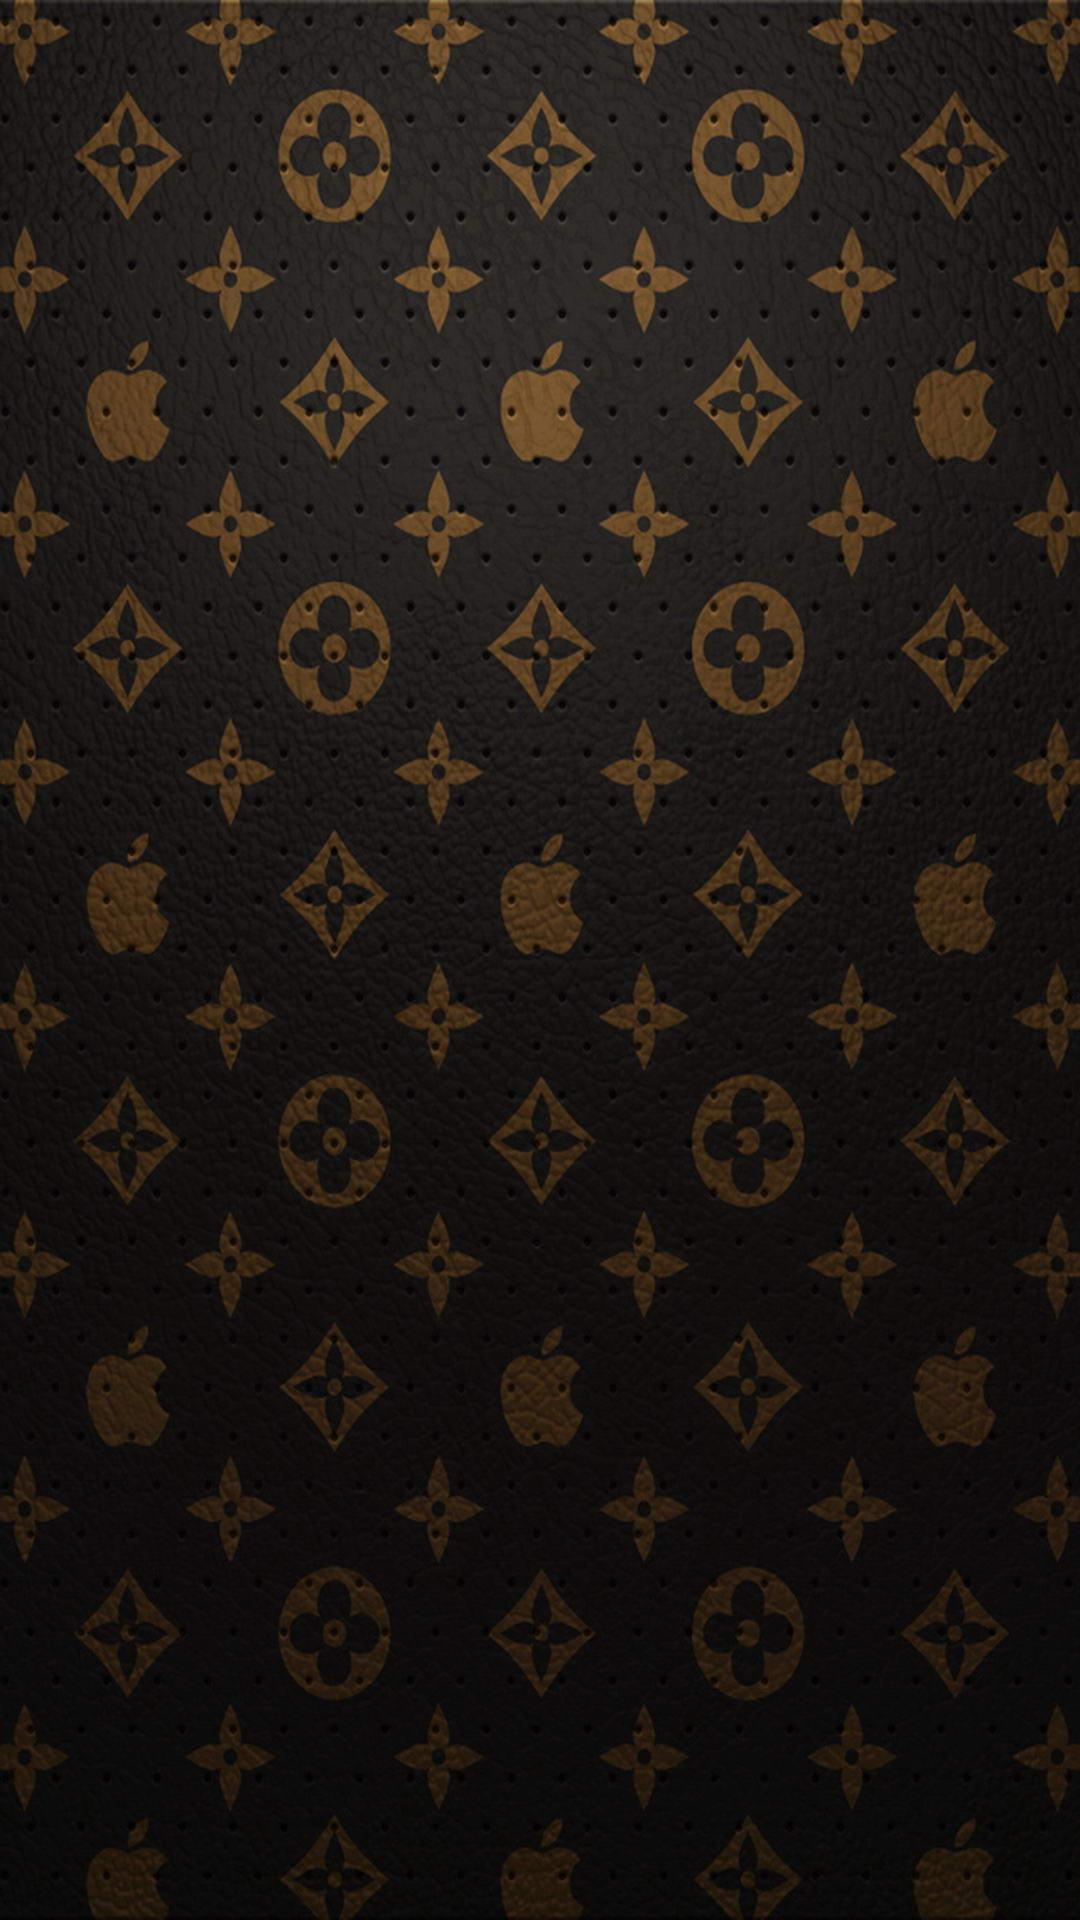 gucci on Tumblr  Gucci wallpaper iphone Print wallpaper Gucci pattern